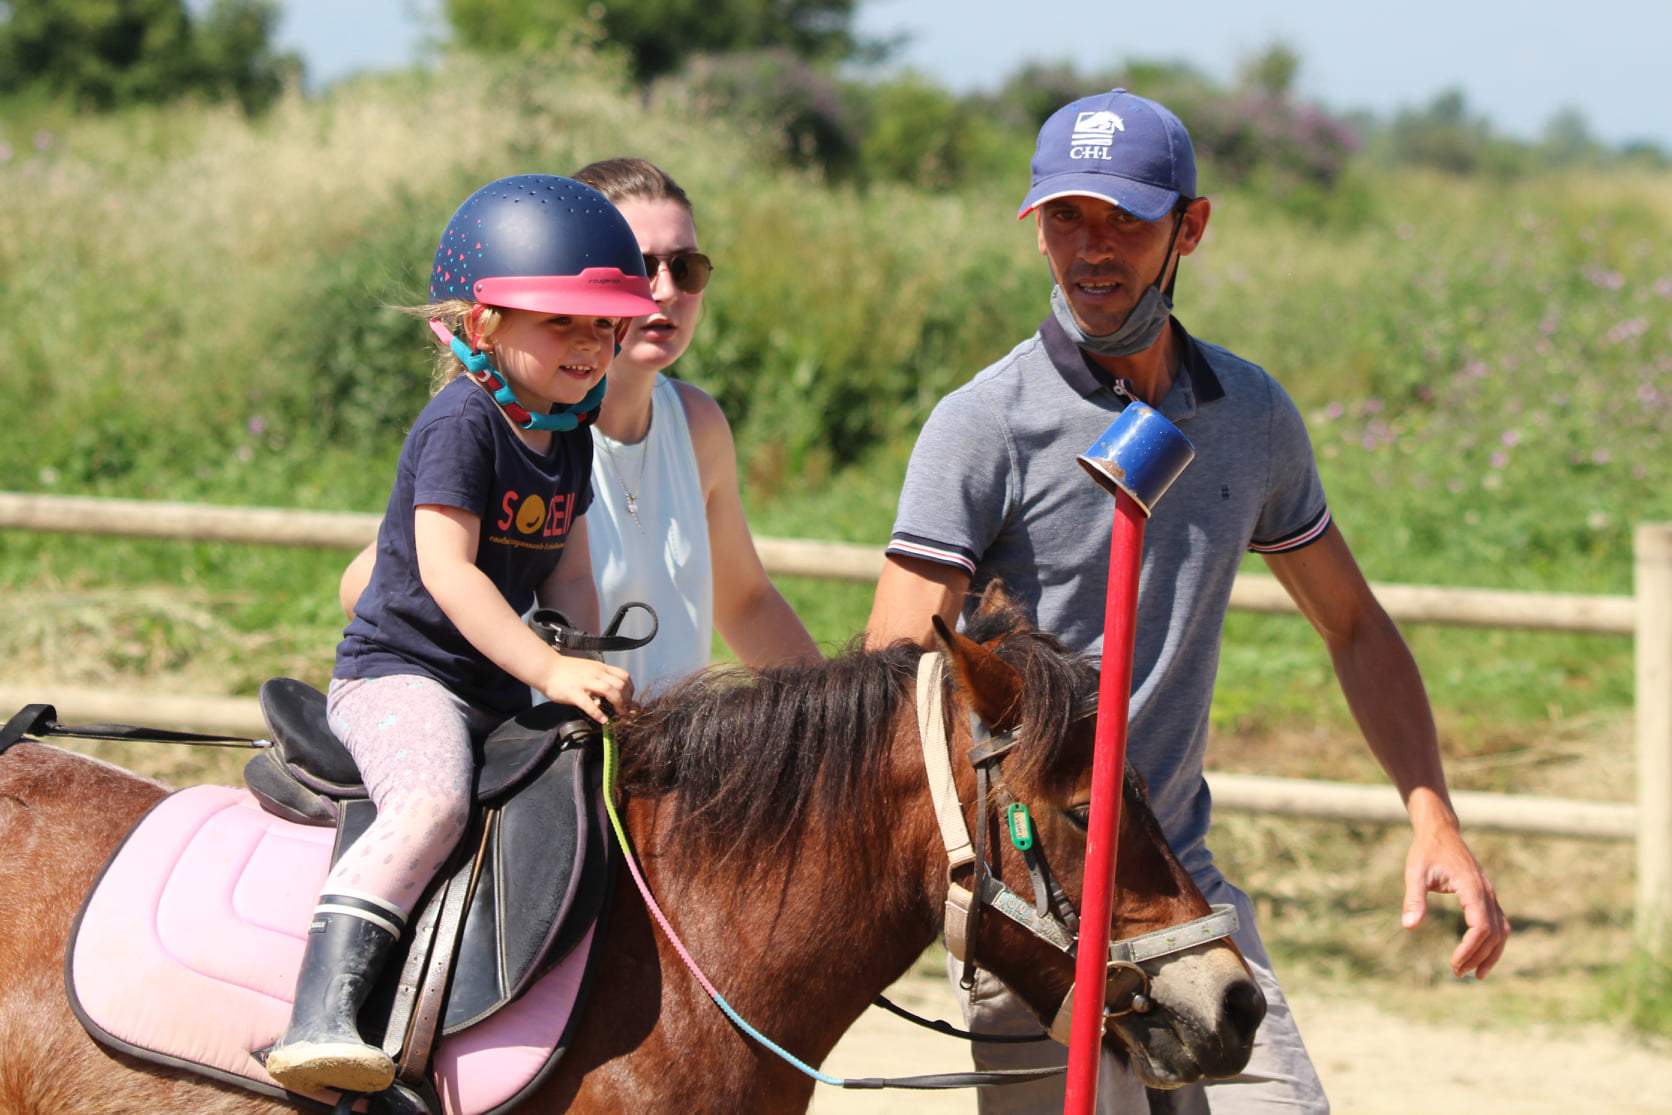 Cours d'équitation pour enfants, adolescents et adultes